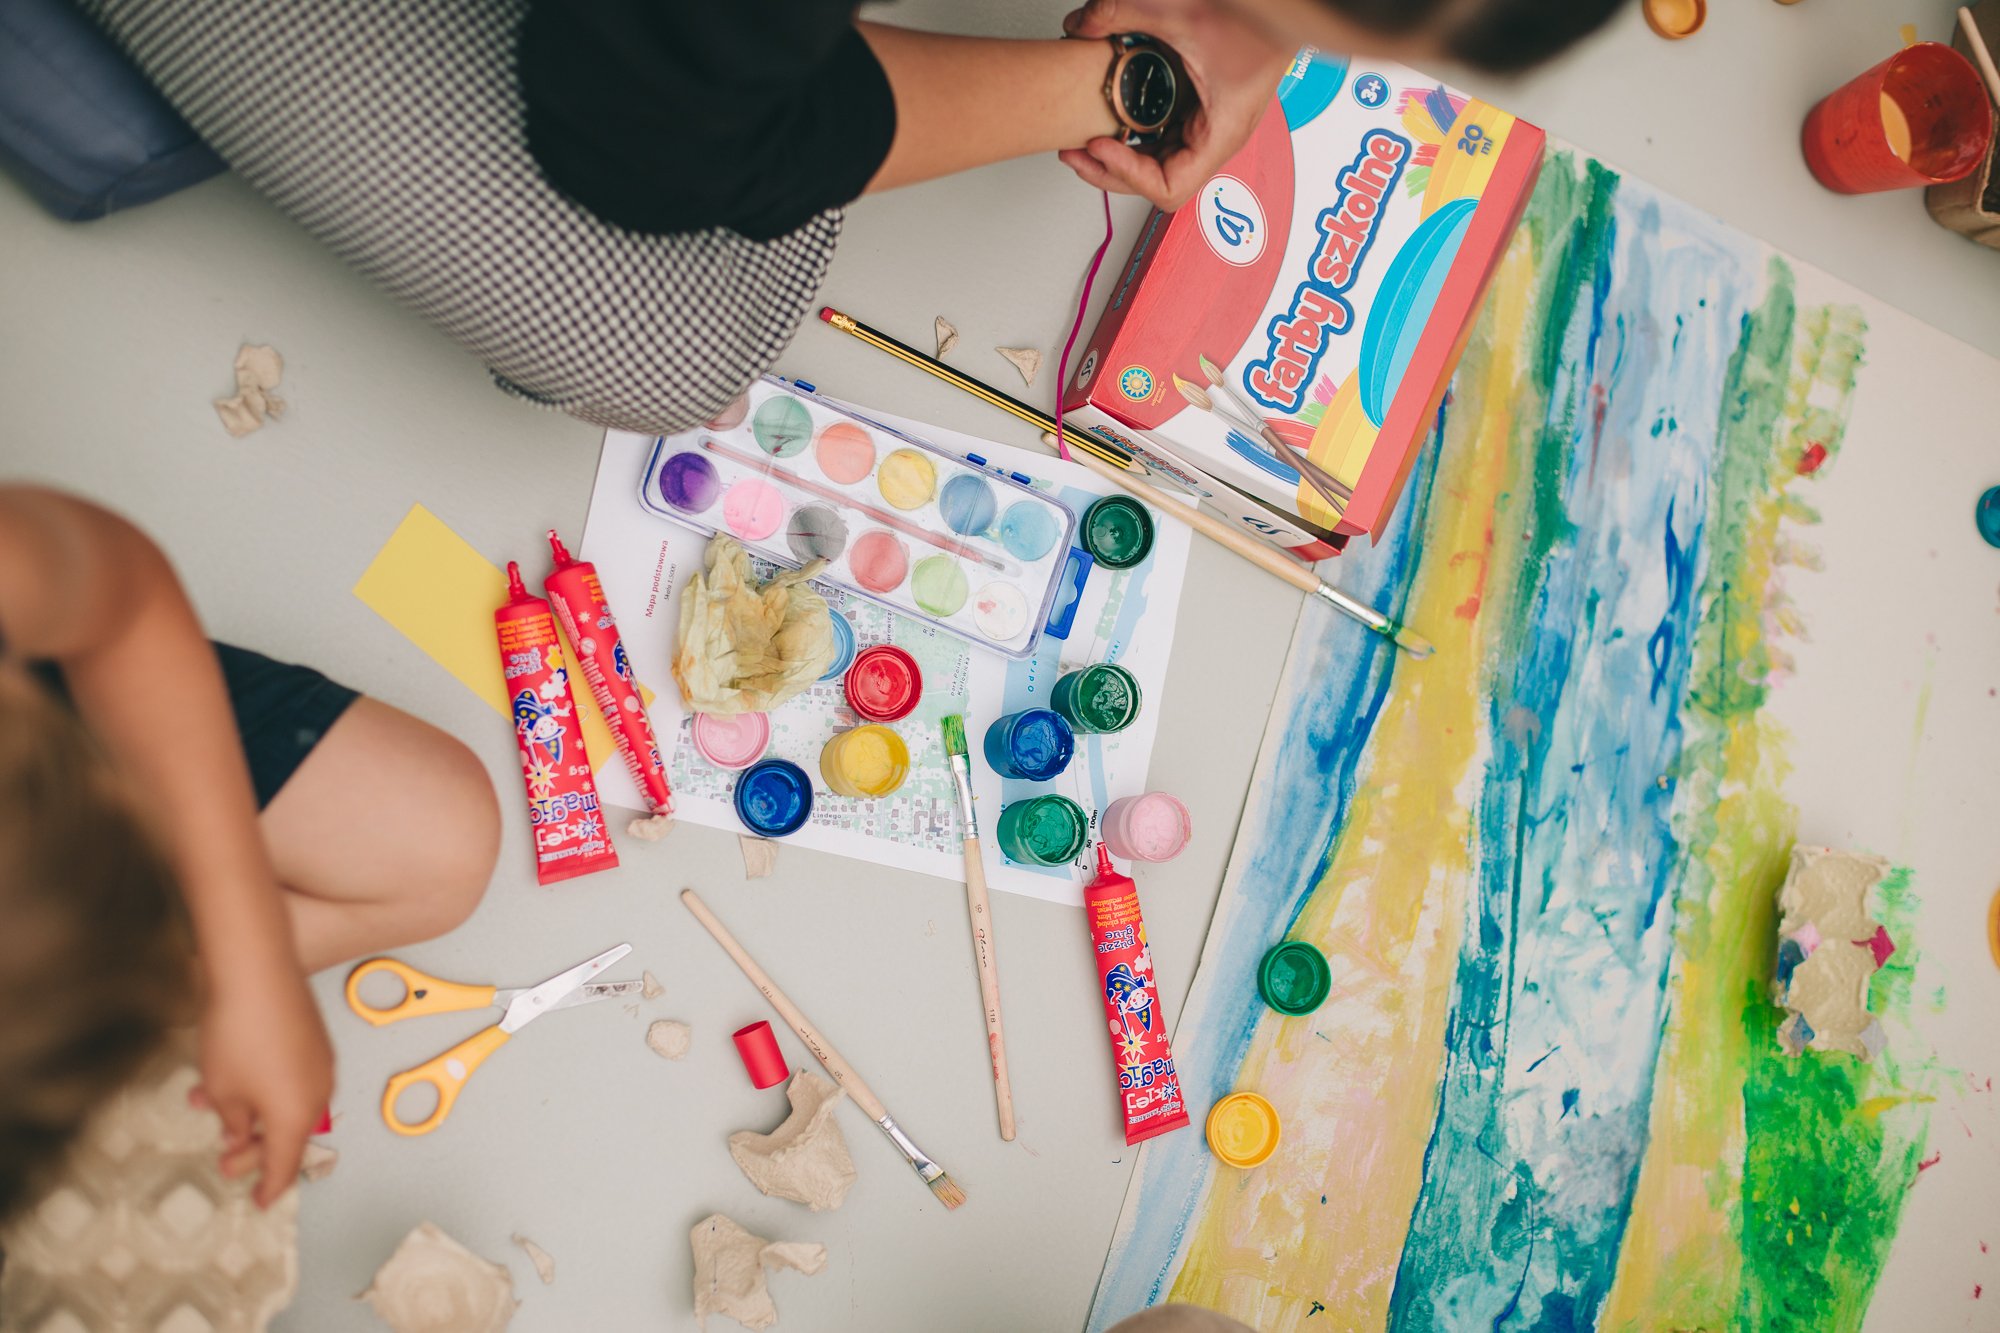 Kolorowa, pozioma fotografia przedstawia dwójkę dzieciaków siedzących na podłodze i malujących farbami. Przed nimi oprócz obrazu leżą farby, kleje, pędzelki i różne materiały plastyczne.